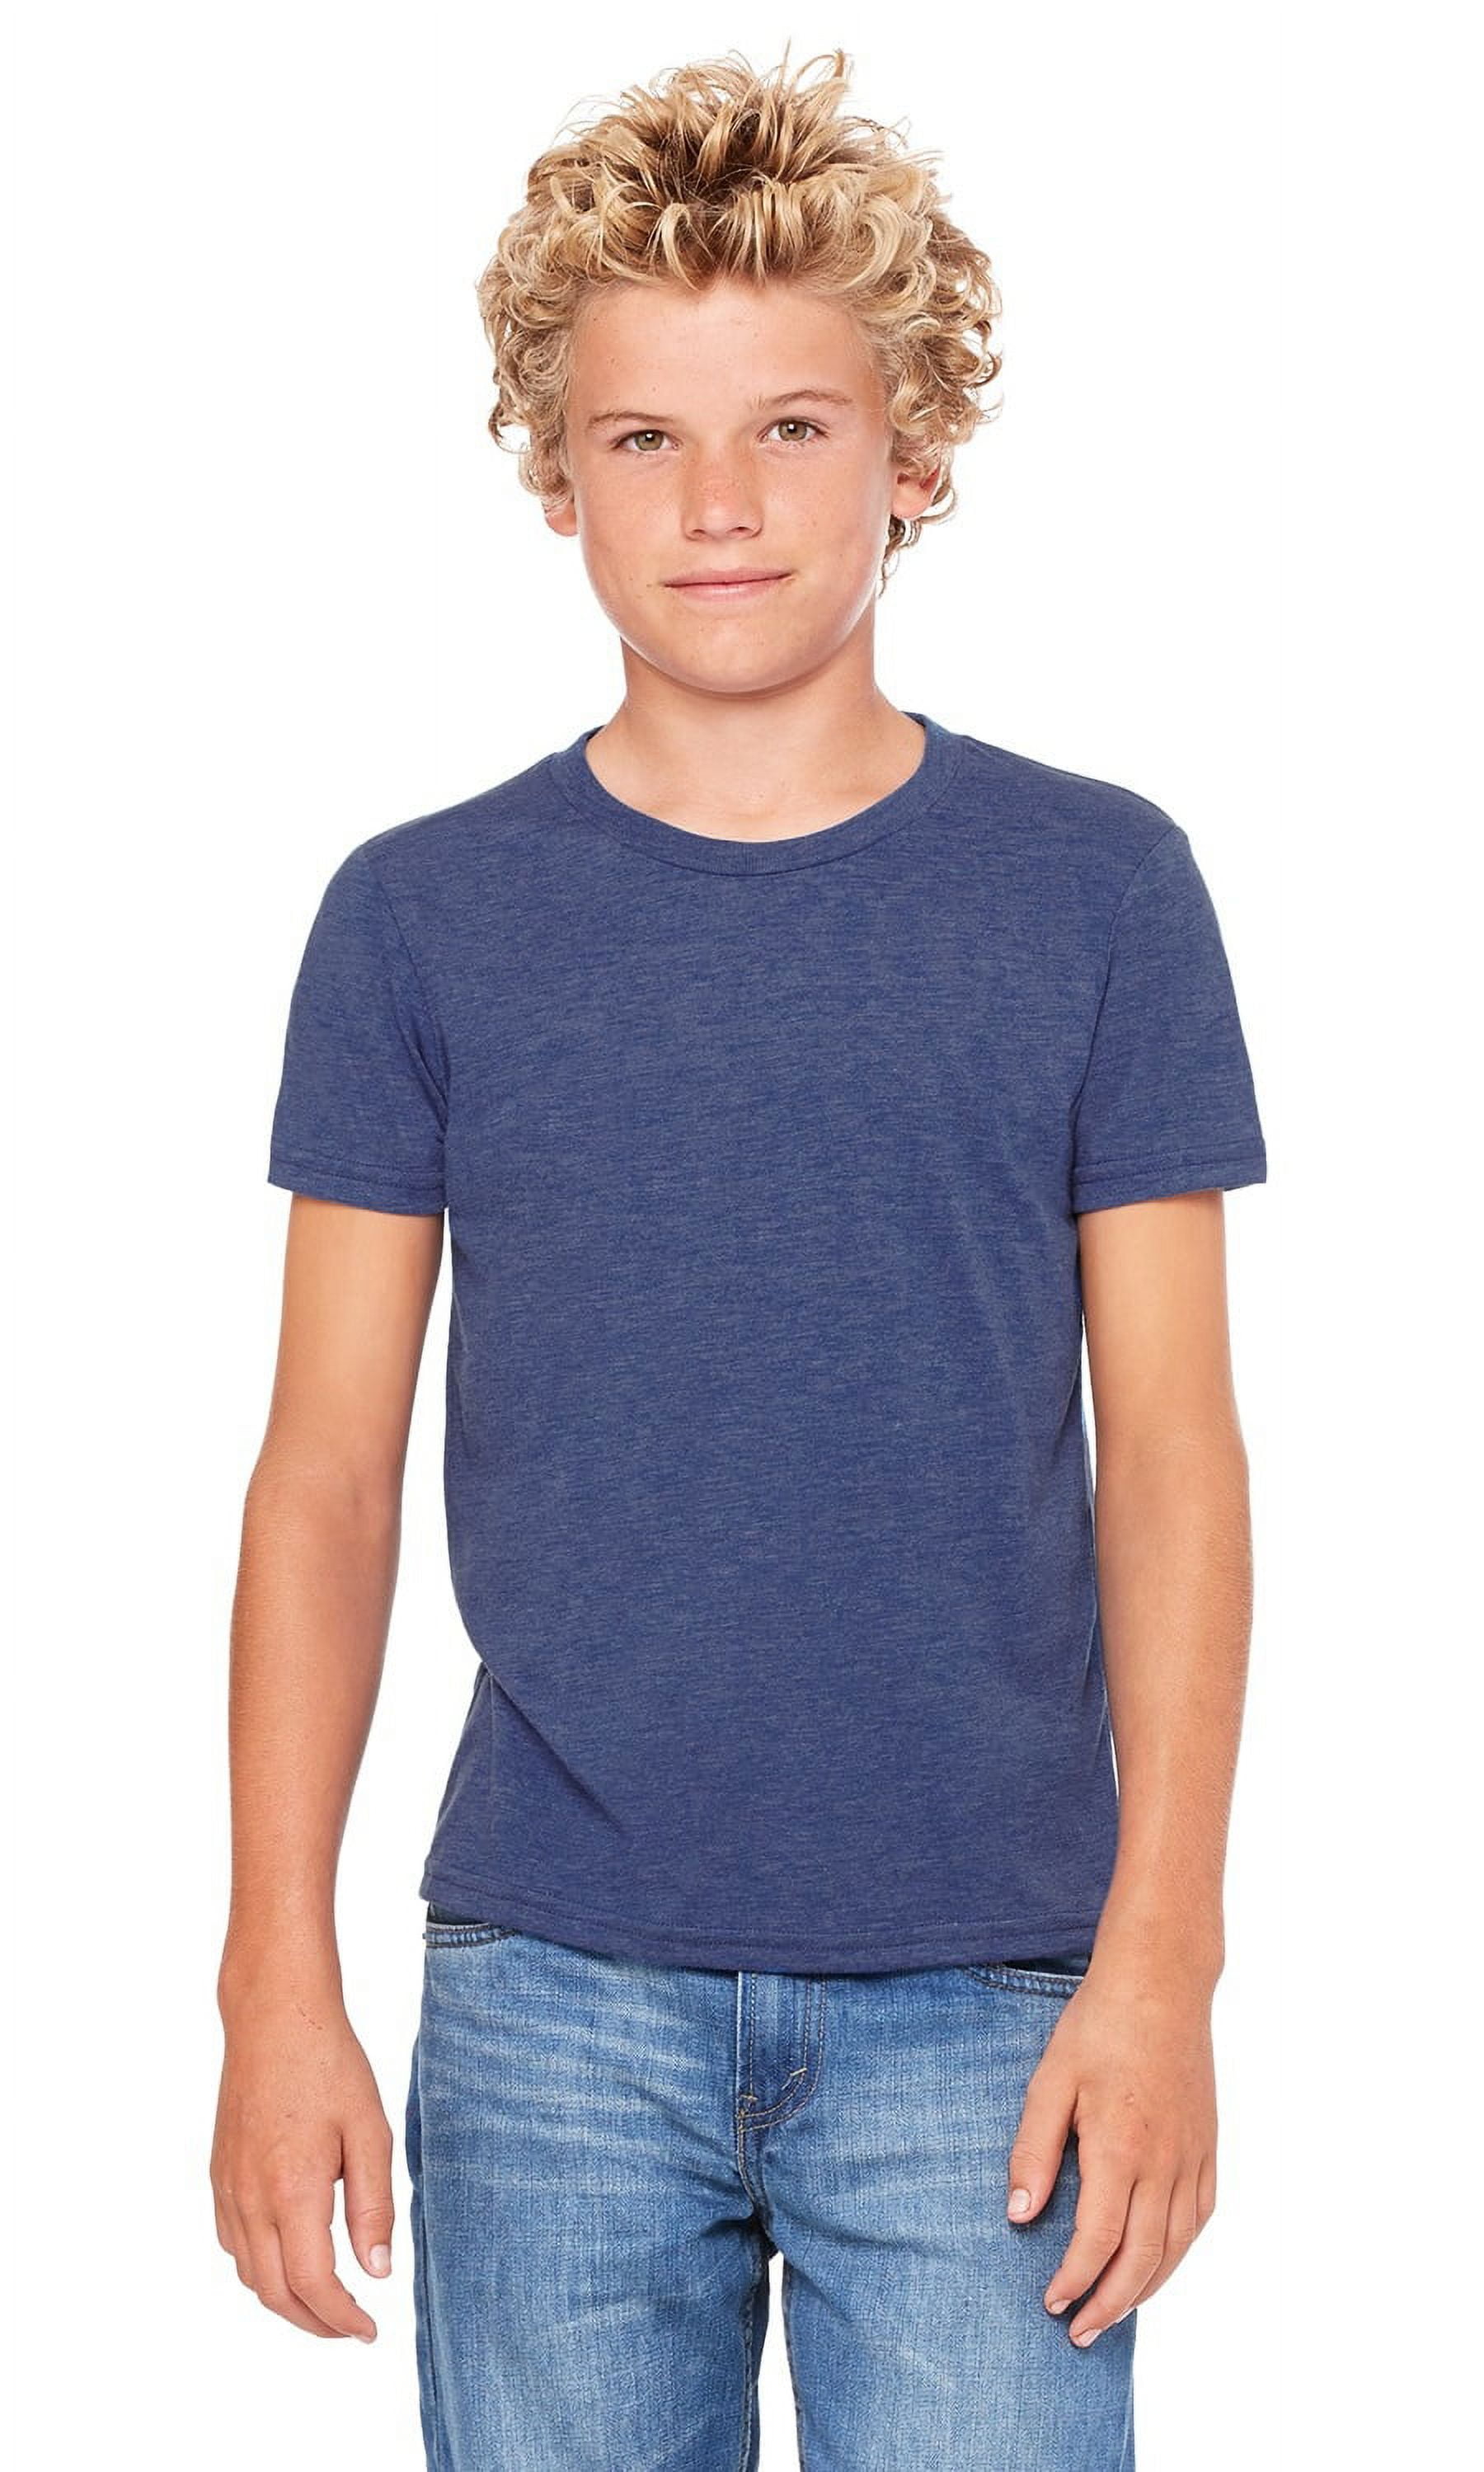 Kids Short Sleeve T-shirt – Pro 5 USA